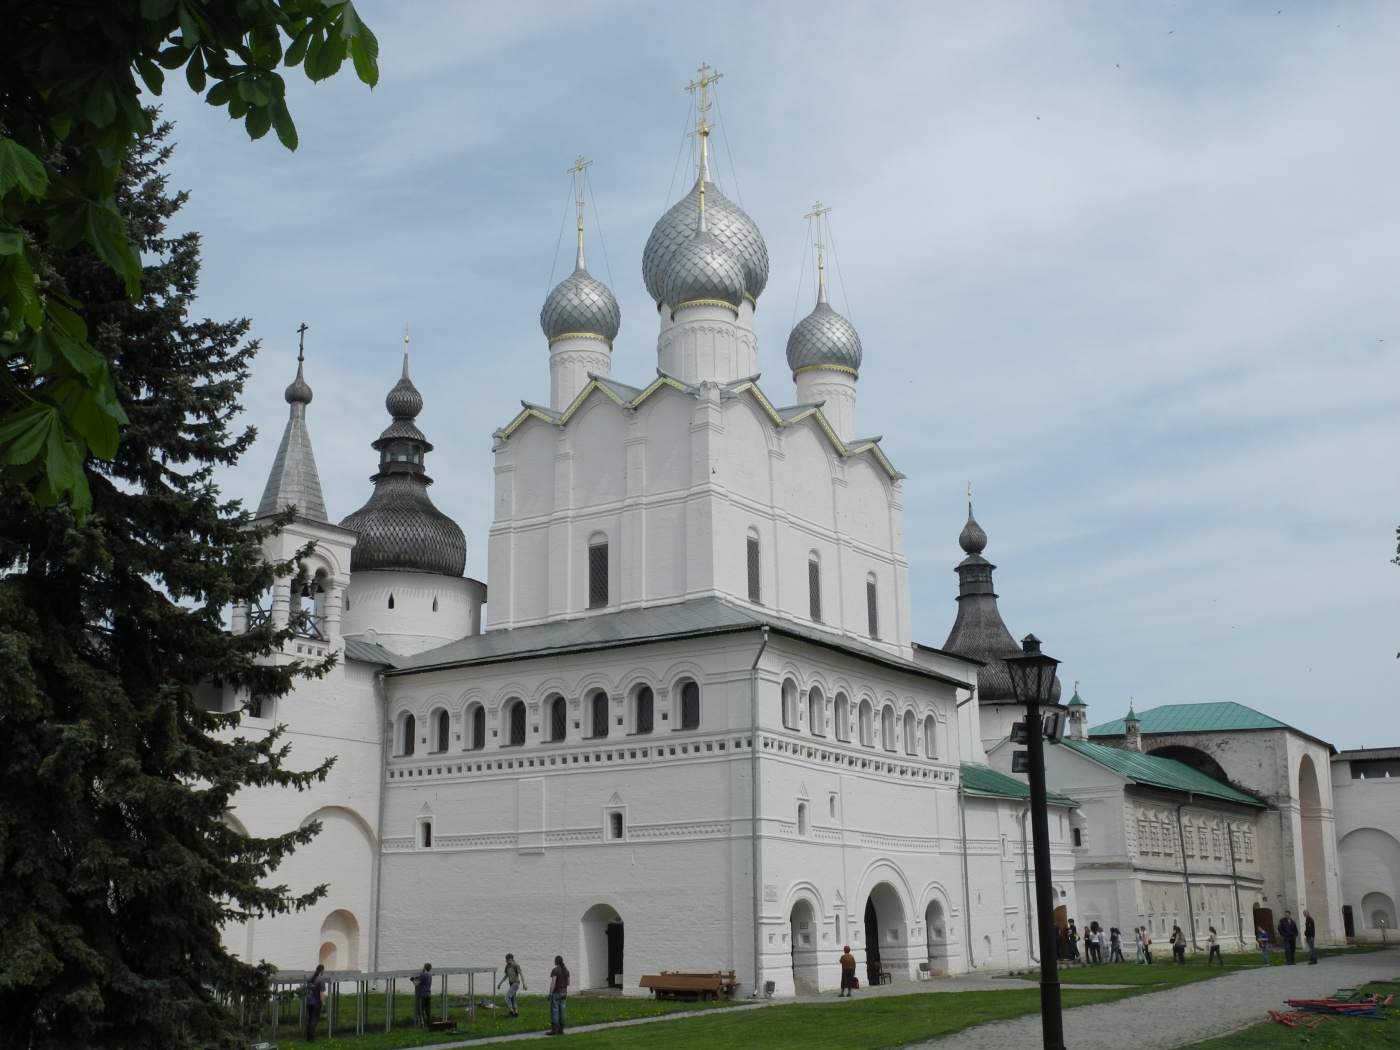 Ростов, Кремль, Воскресенская церковь. Панорамы